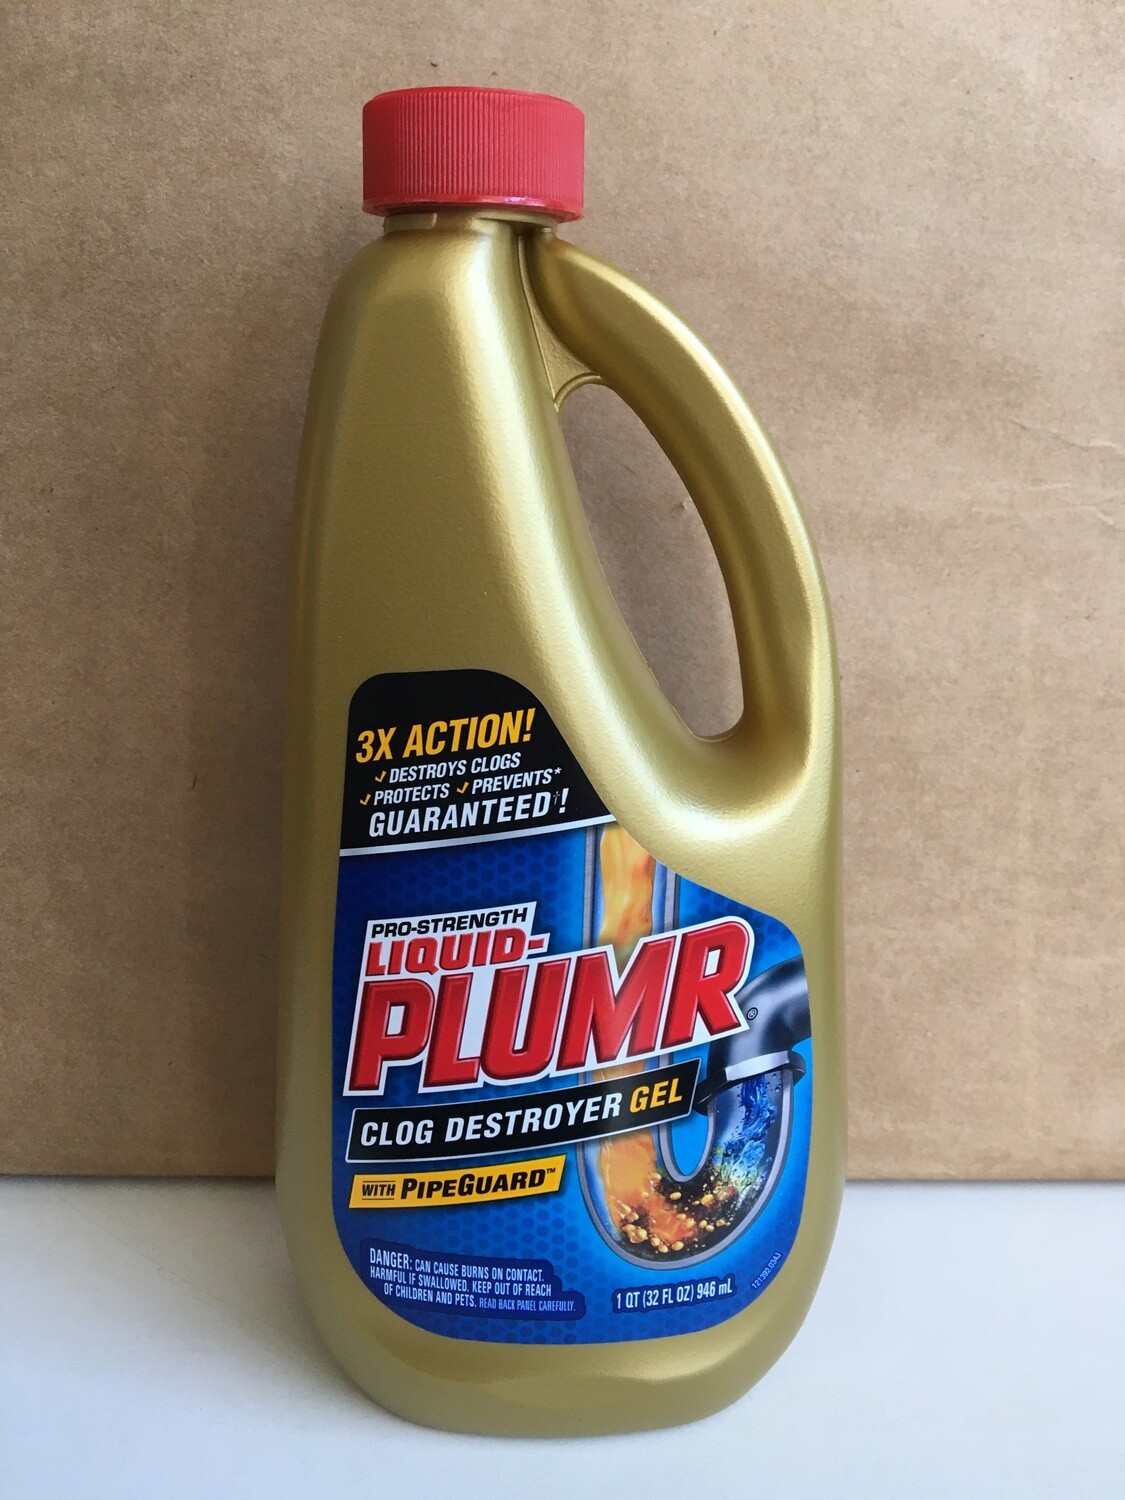 Household / Cleanser / Liquid Plumber Pro Strength, 32 oz